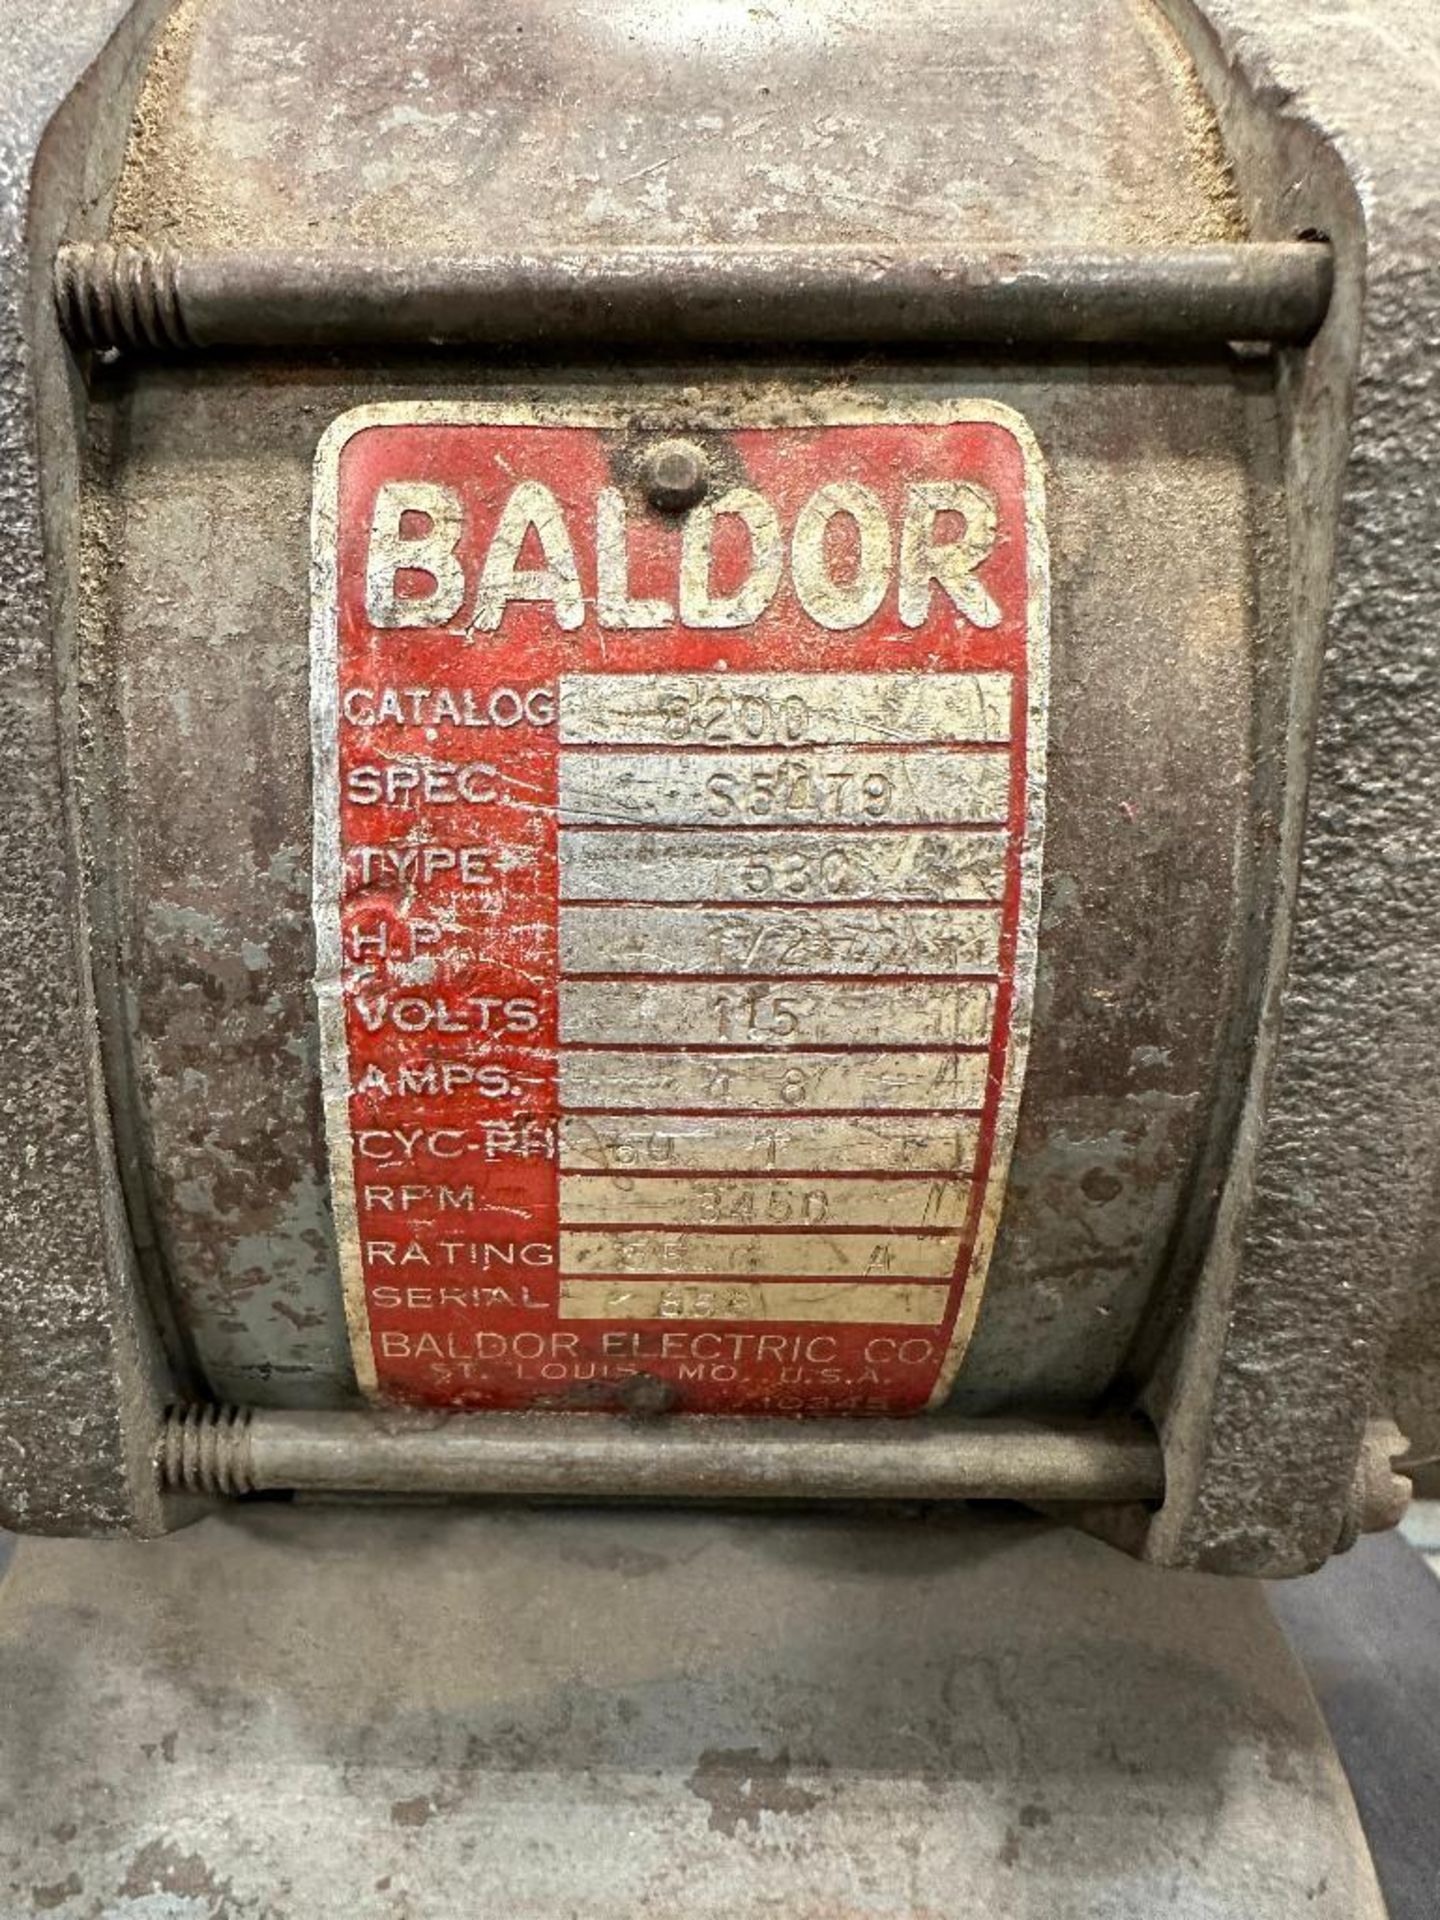 Baldor 1/2HP Bench Grinder w/ Pedestal Stand - Image 3 of 3